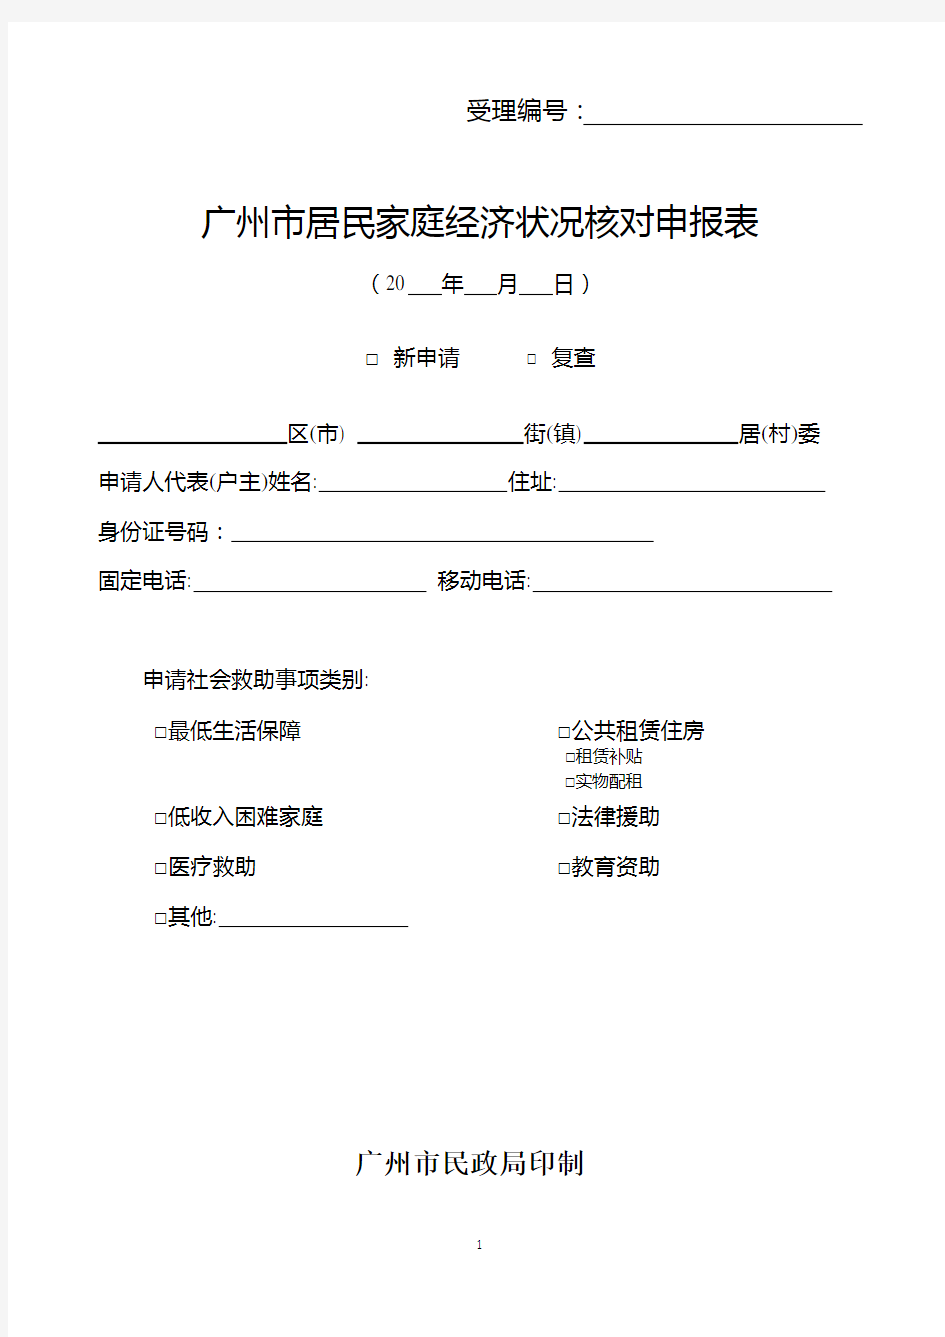 广州市居民家庭经济状况核对申报表